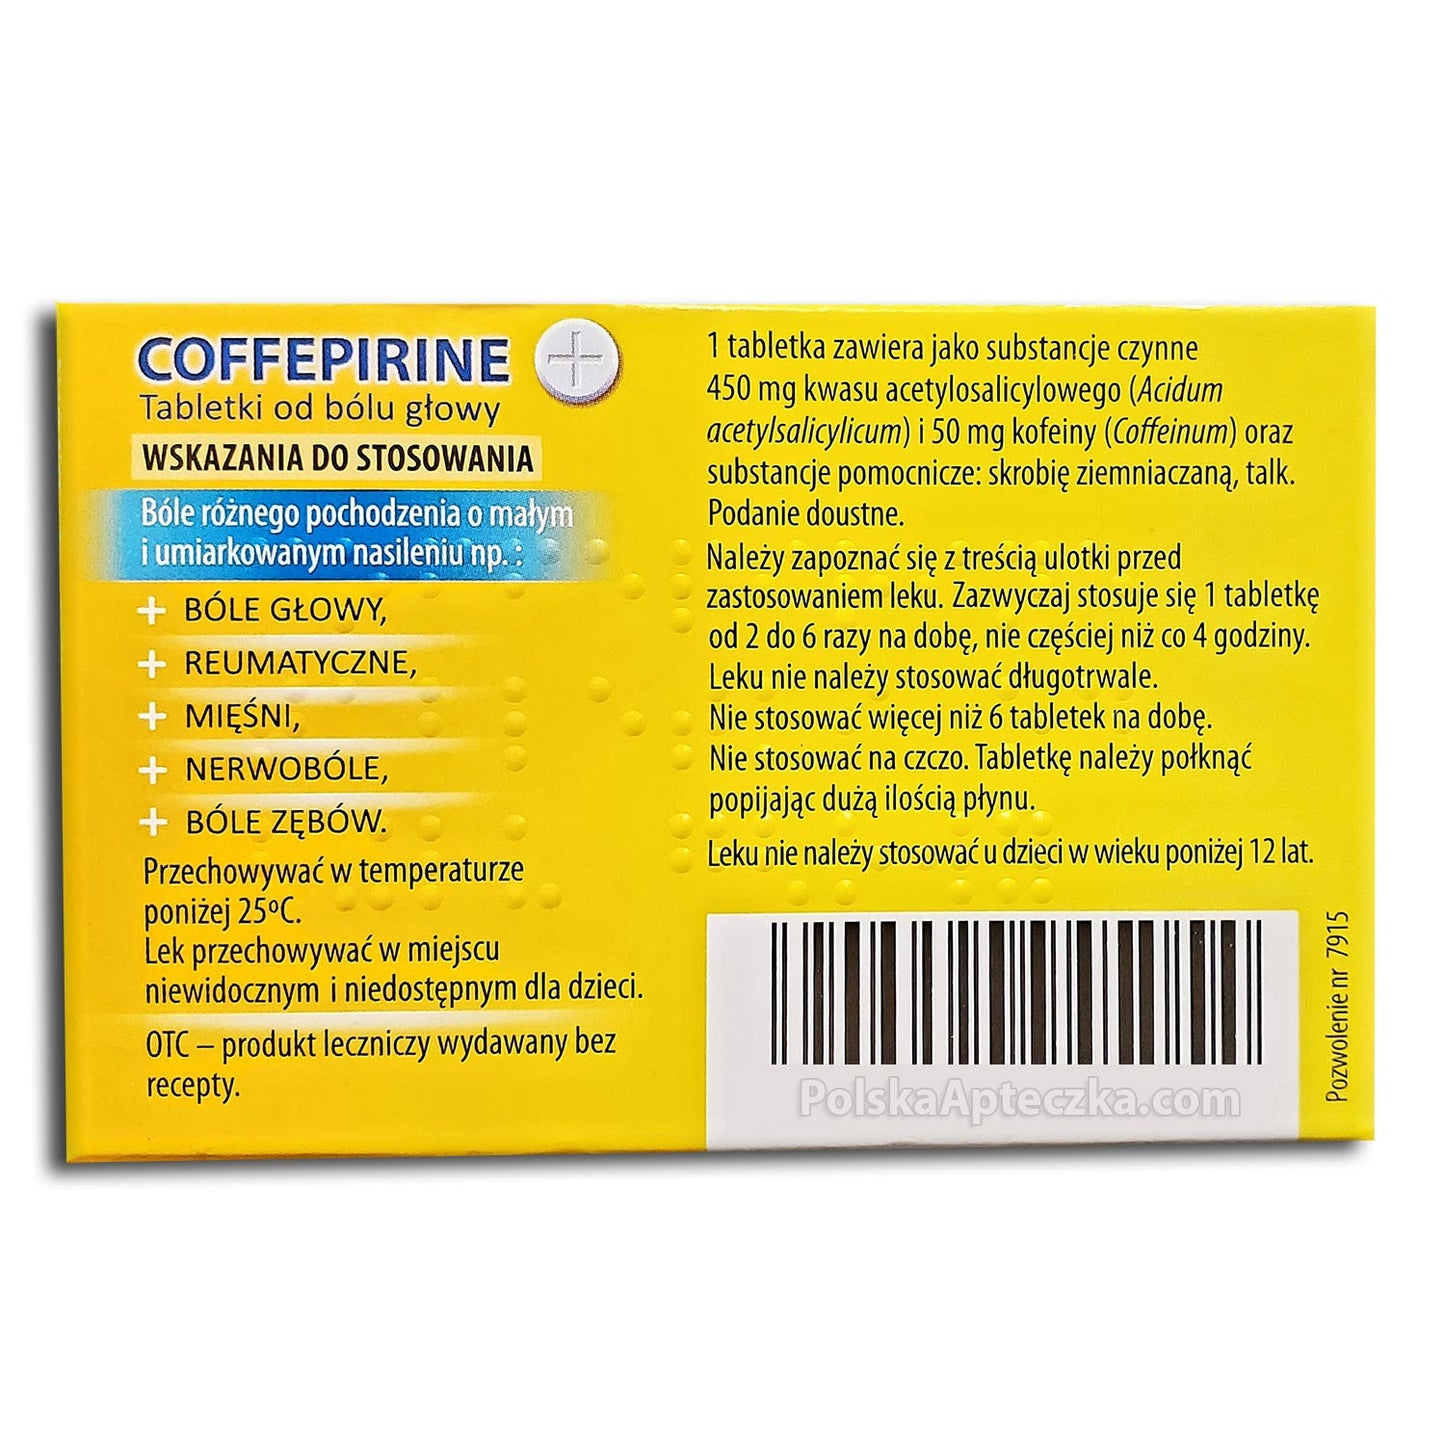 Coffepirine tabletki od bólu głowy, 12 tabletek